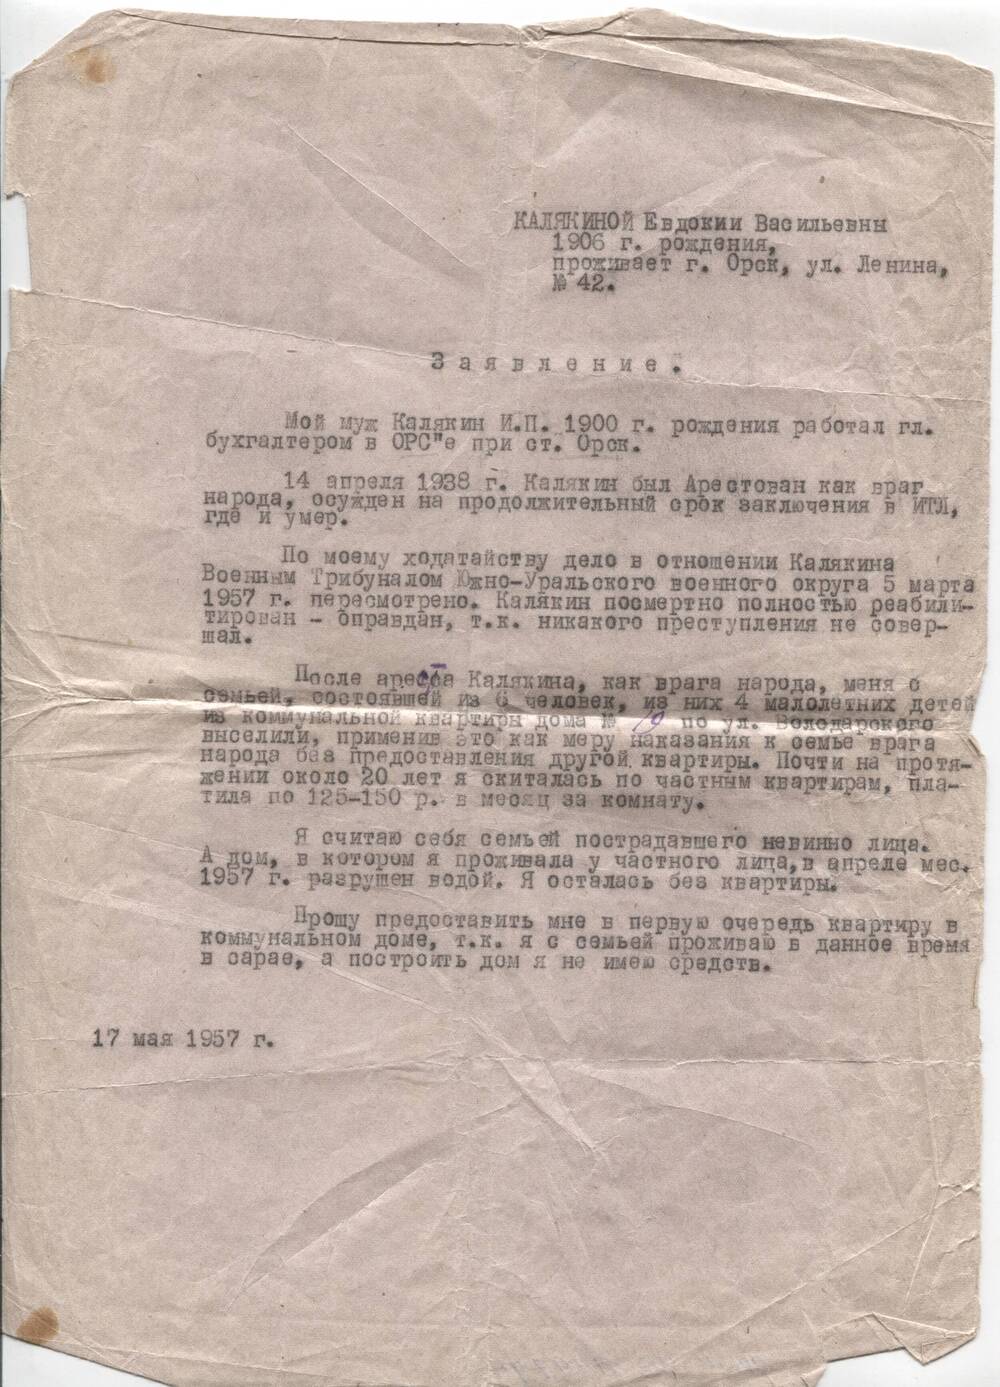 Заявление Калякиной Е. В. о предоставлении ей жилья, как семье пострадавшей невинно. 17 мая 1957г.